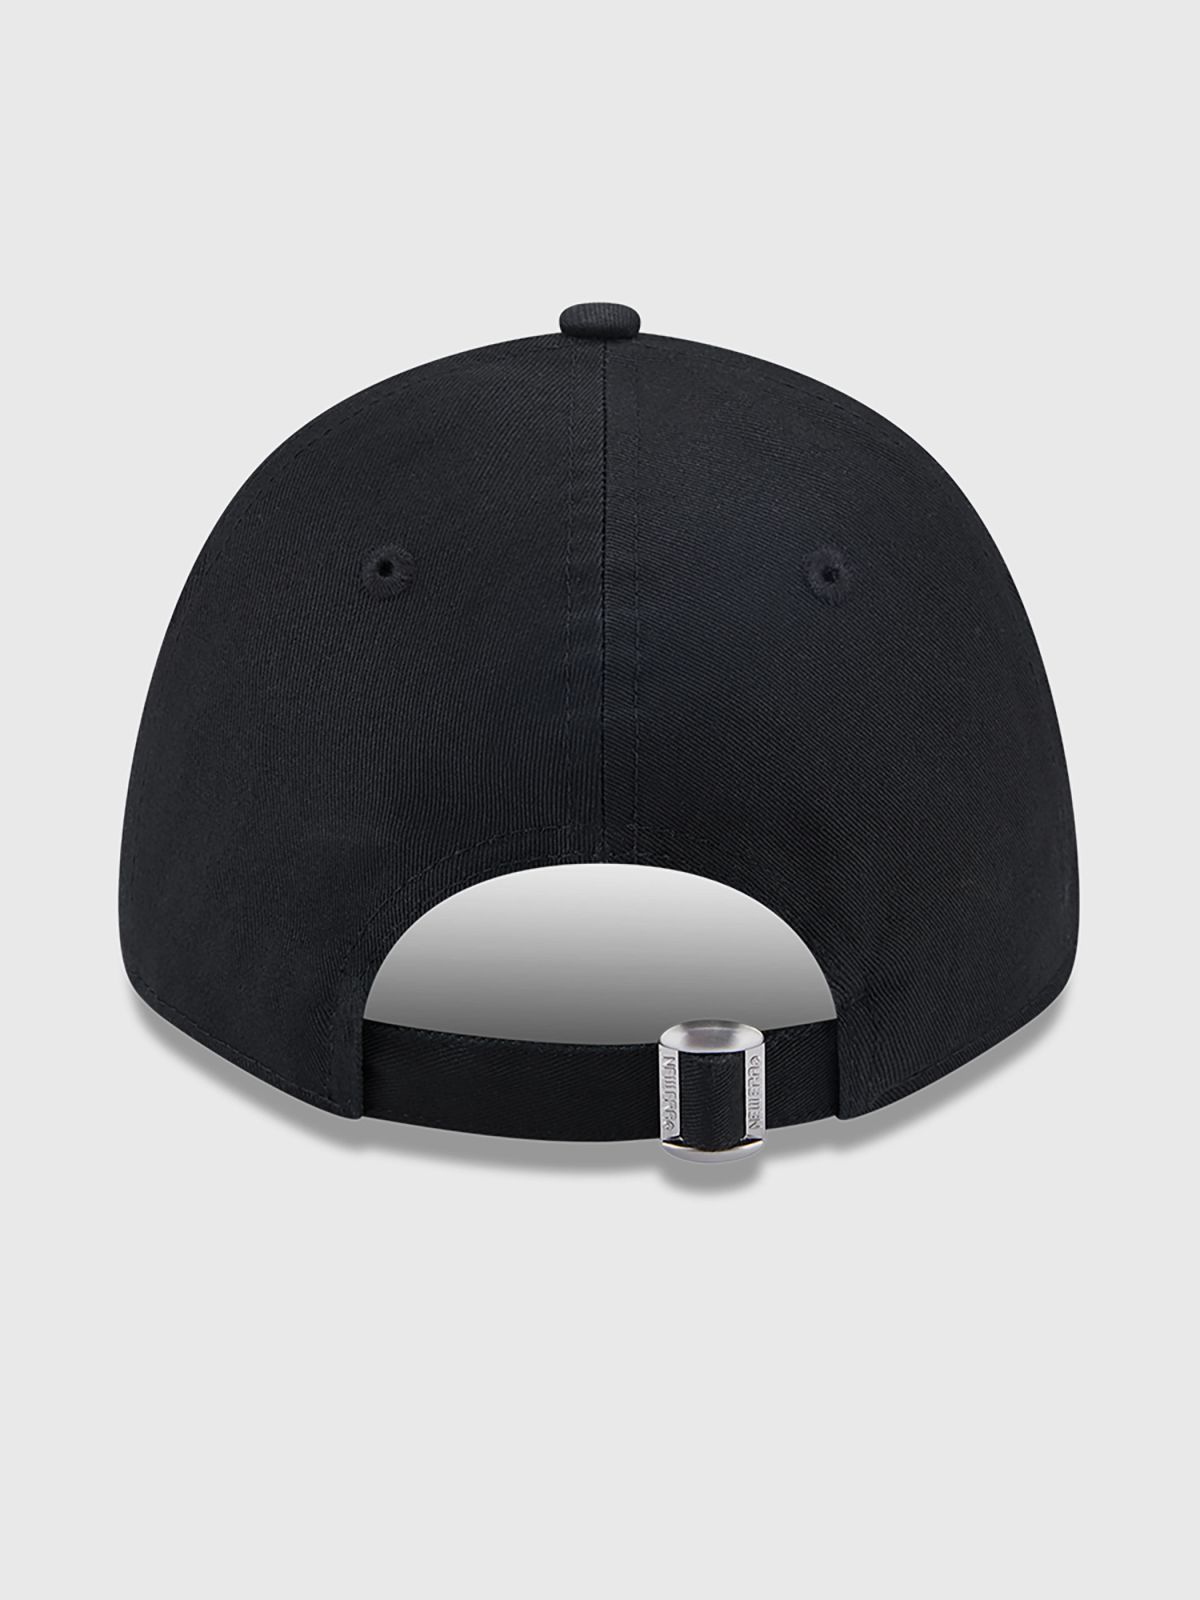  כובע מצחייה עם לוגו / גברים של NEW ERA